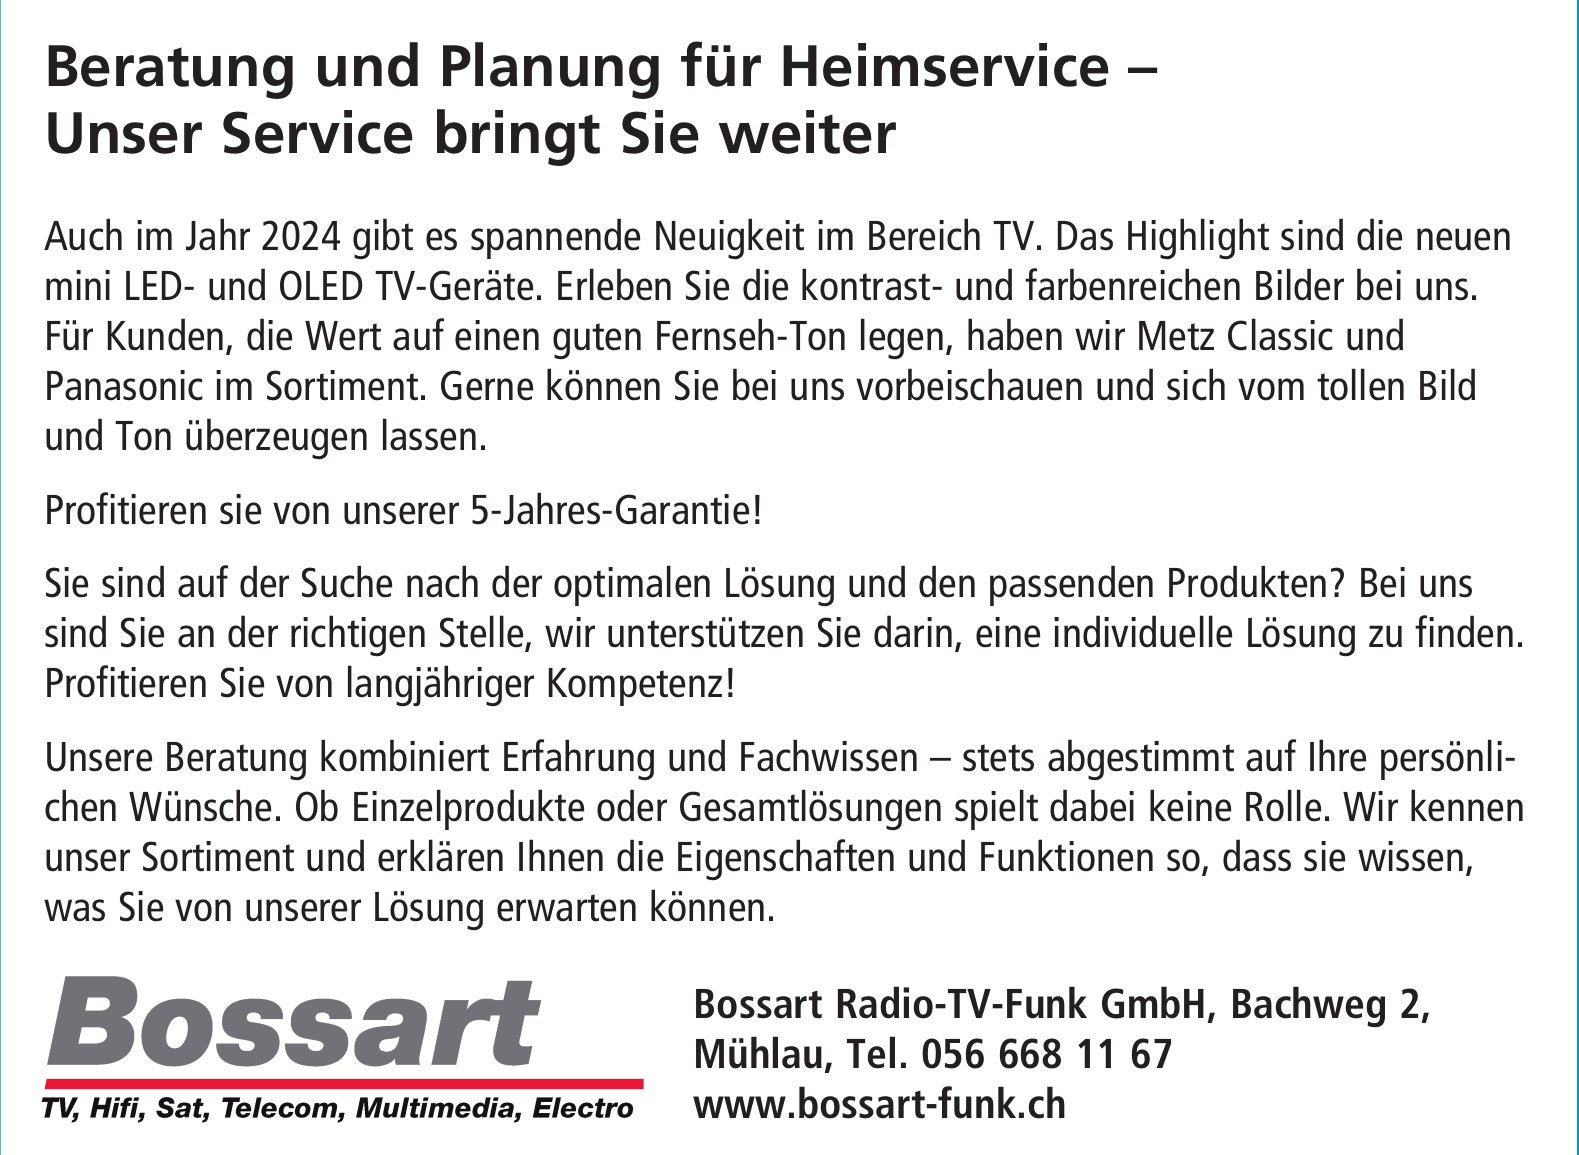 Bossart Radio-TV-Funk GmbH, Mühlau - Beratung und Planung für Heimservice - Unser Service bringt Sie weiter